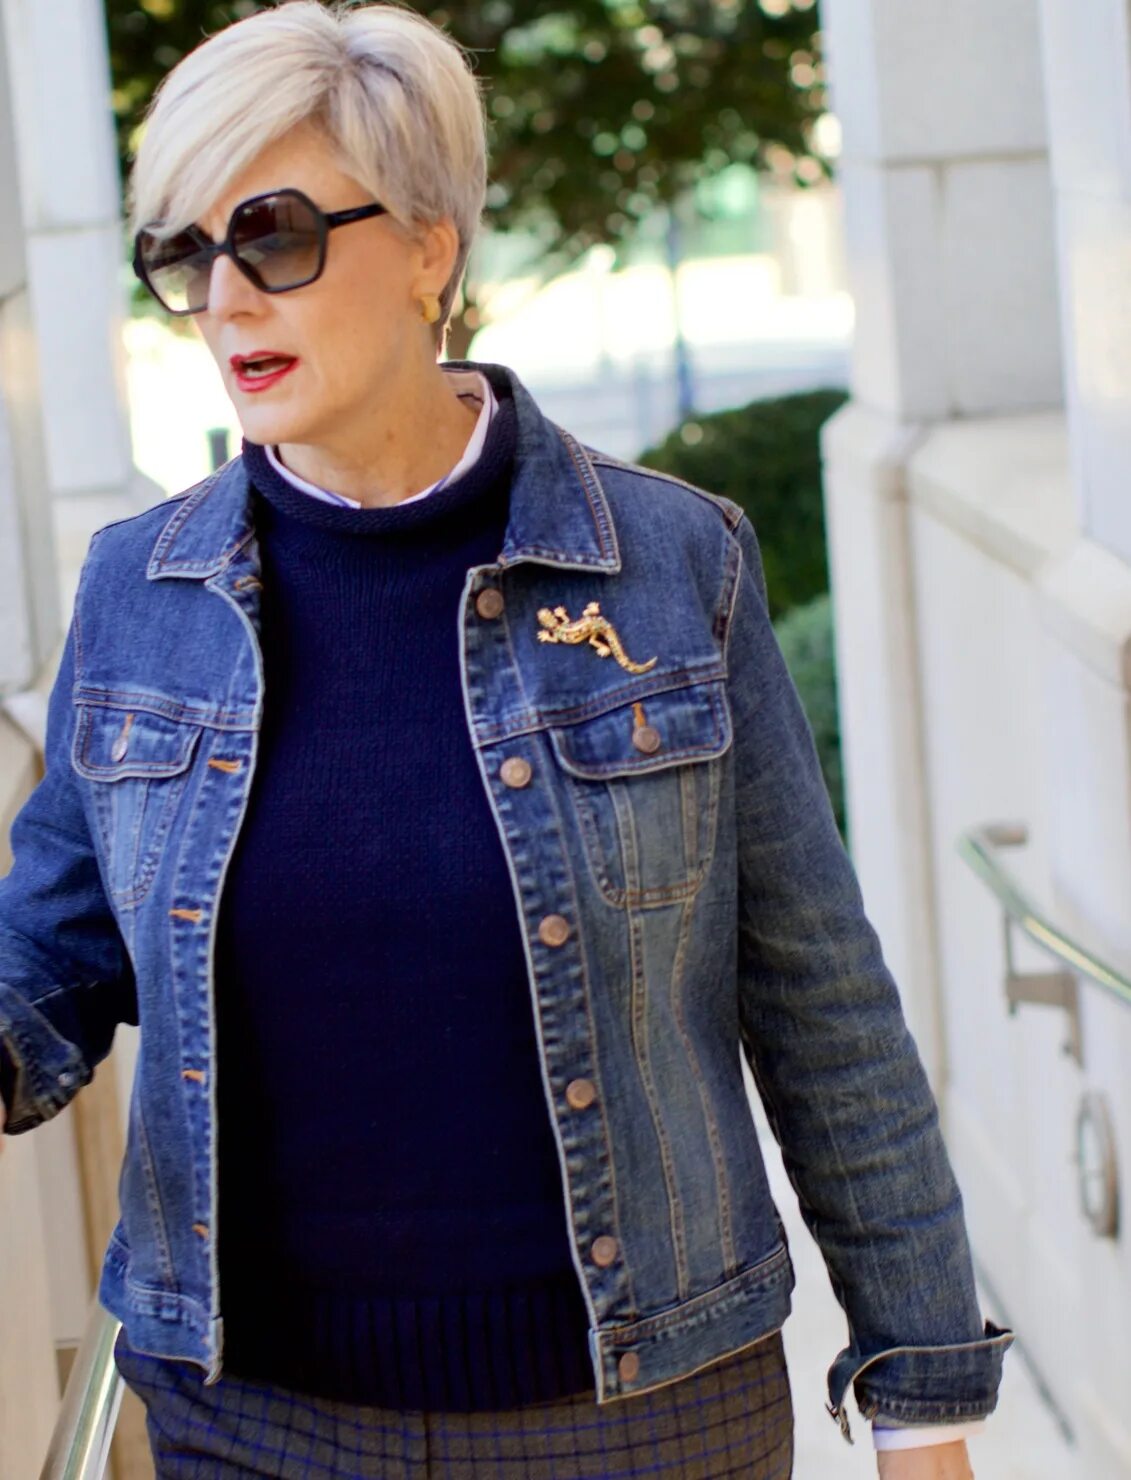 Джинсы для женщин 60. Джинсовая куртка женская. Джинсовые куртки для женщин после 50 лет. Джинсовые куртки женские 50 лет. Короткая джинсовка для полных женщин.